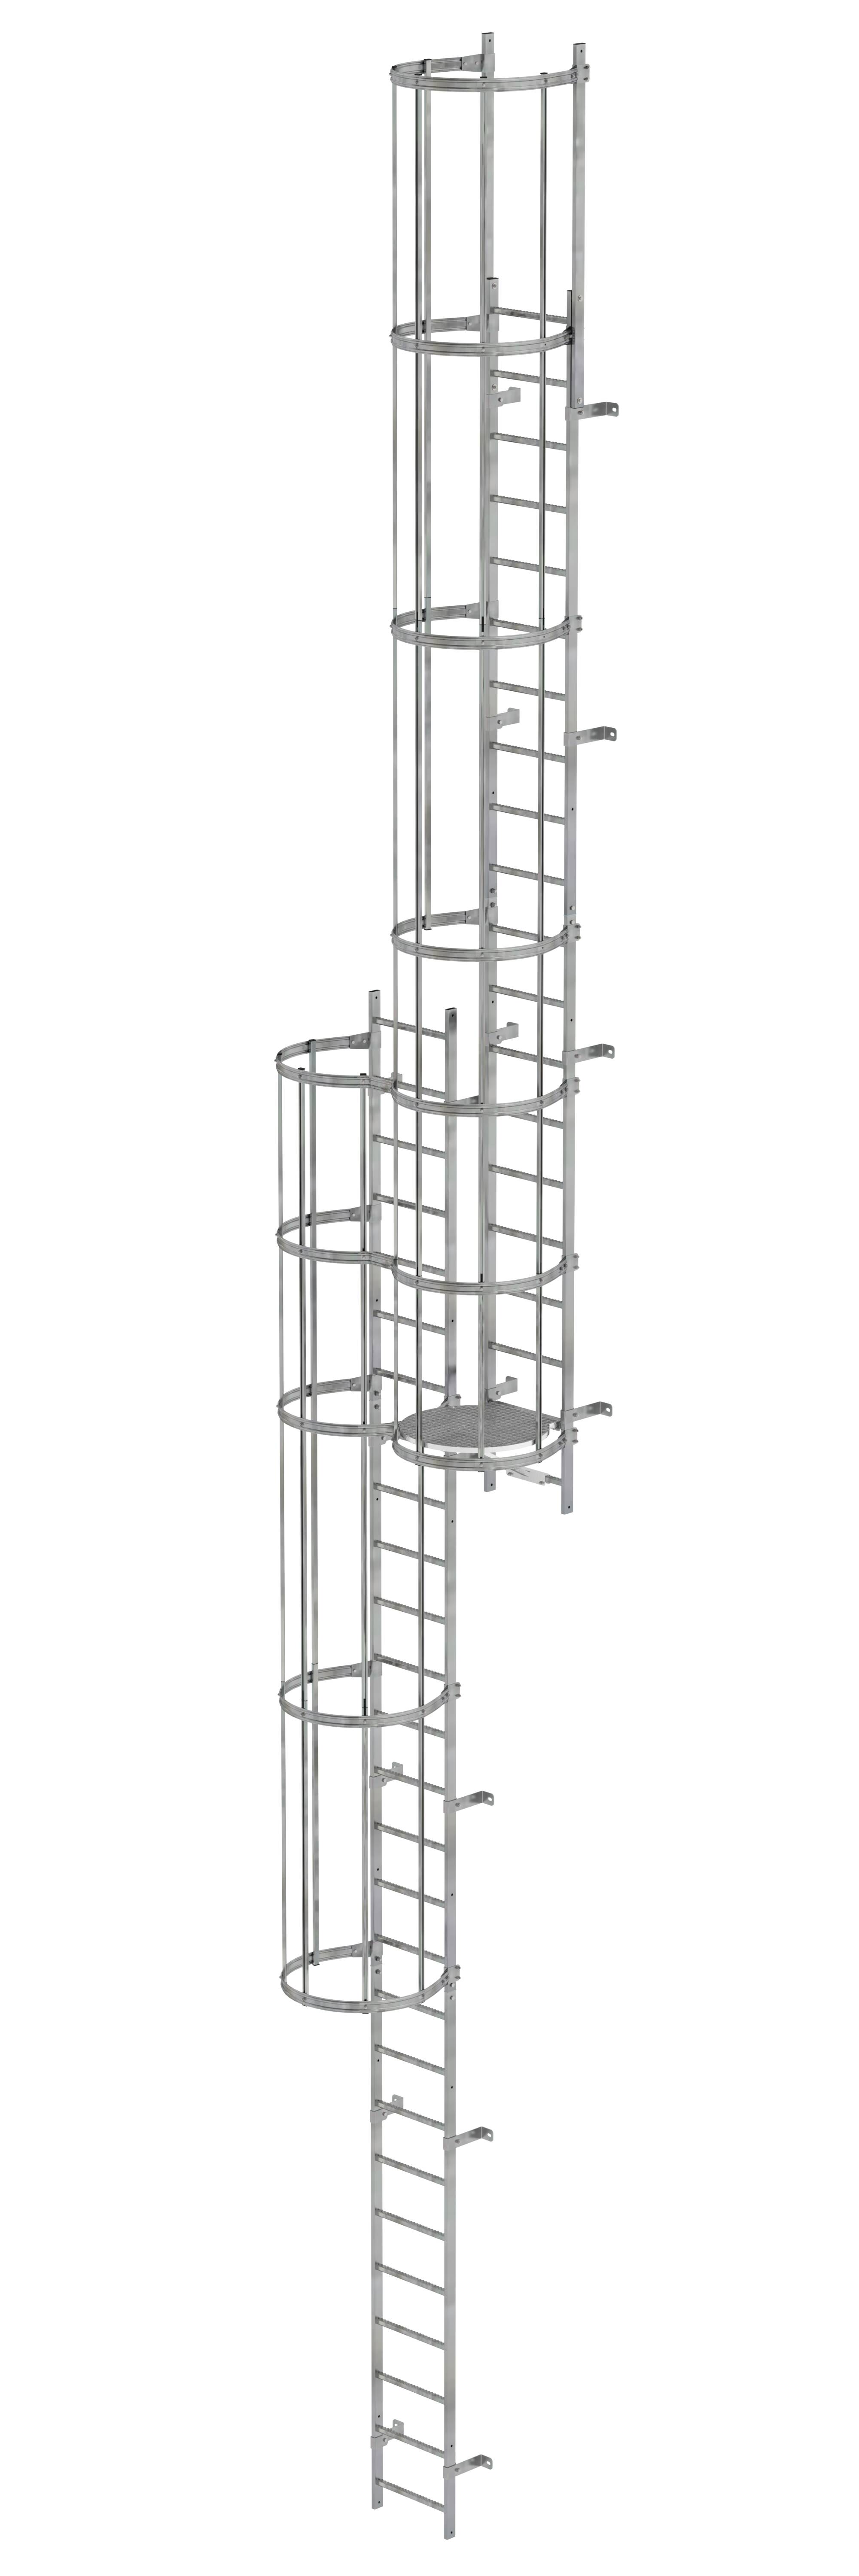 MUNK Mehrzügige Steigleiter mit Rückenschutz (Notleiter) Stahl verzinkt  